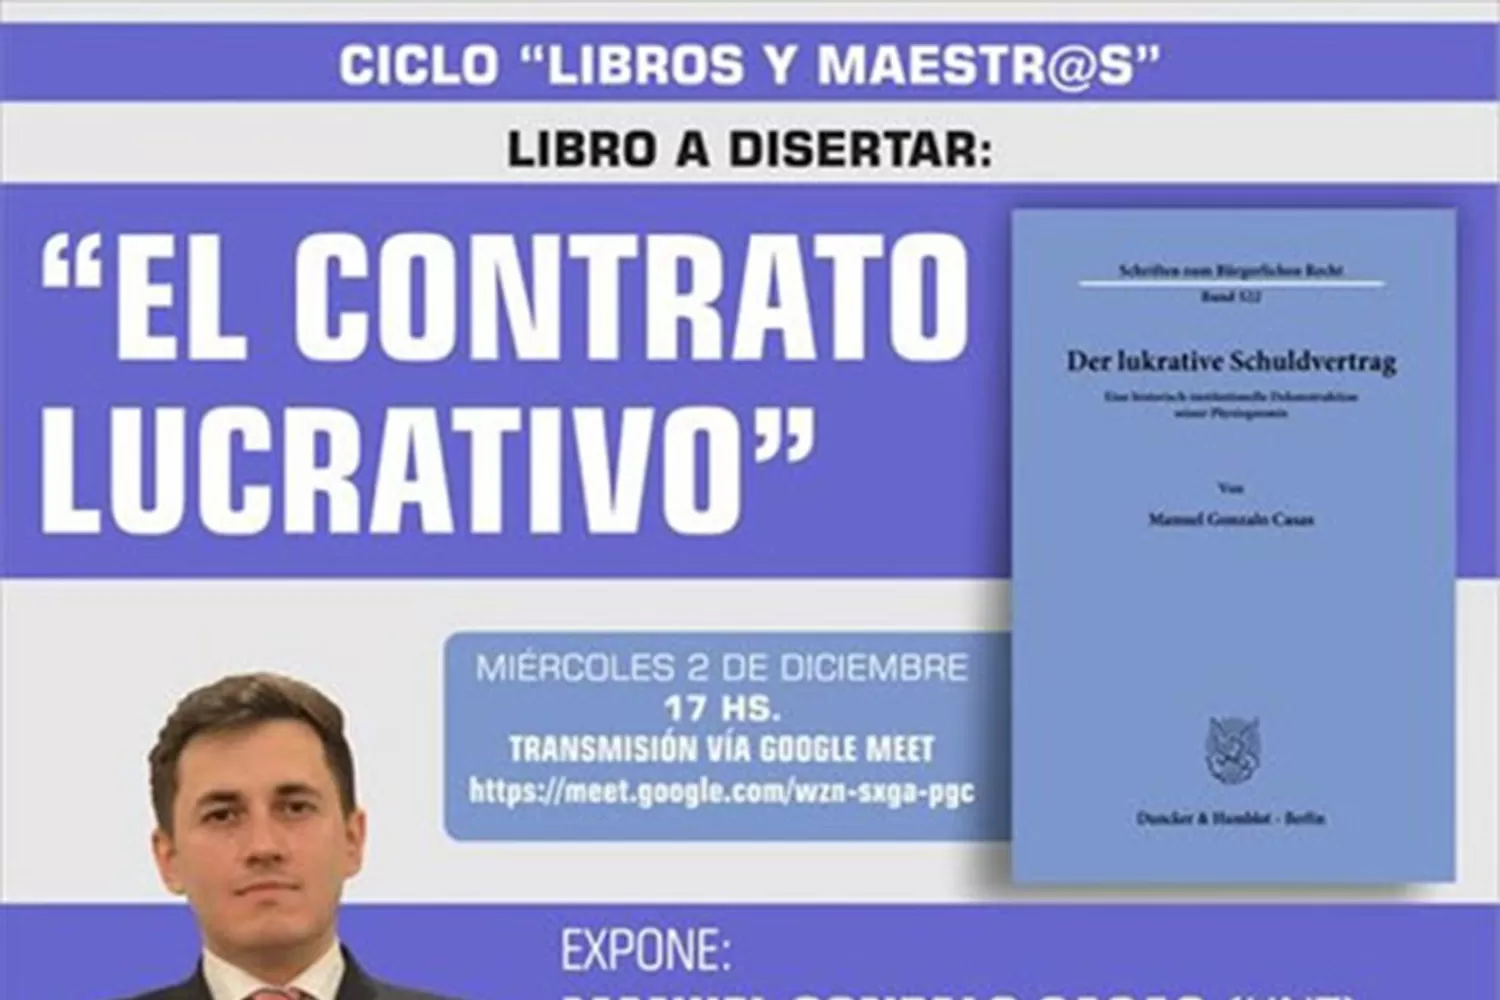 “El contrato lucrativo”: expone Manuel Gonzalo Casas en Derecho